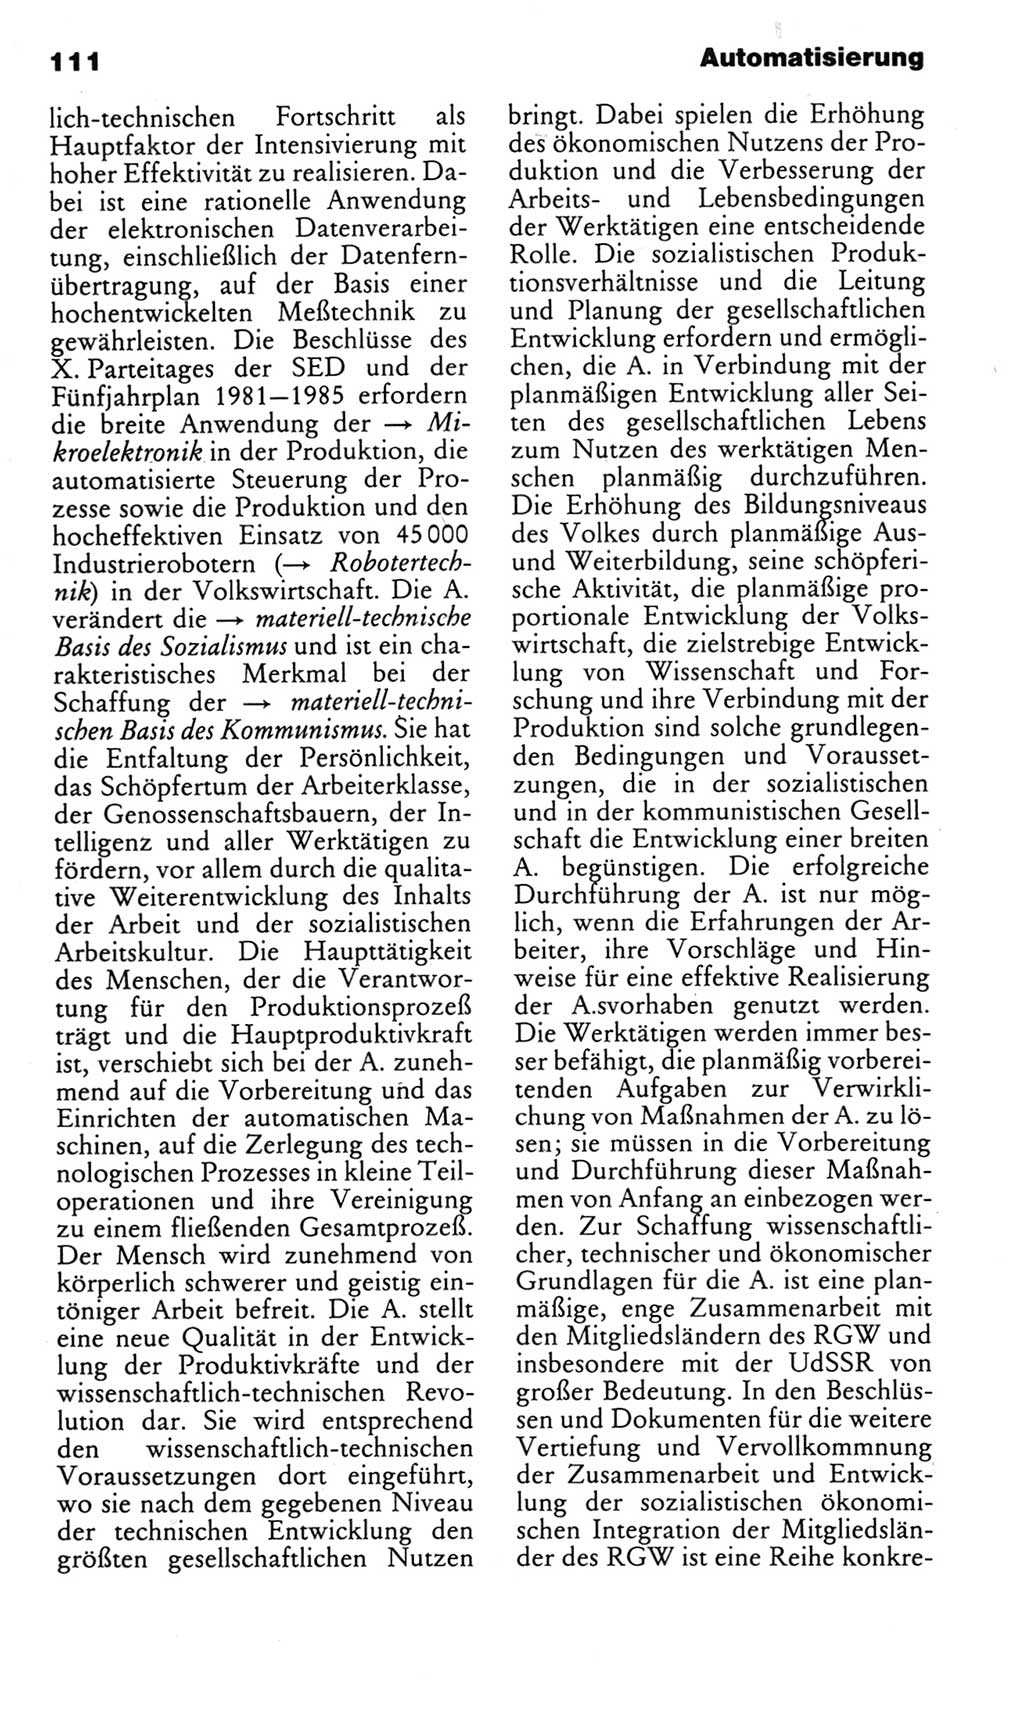 Kleines politisches Wörterbuch [Deutsche Demokratische Republik (DDR)] 1983, Seite 111 (Kl. pol. Wb. DDR 1983, S. 111)